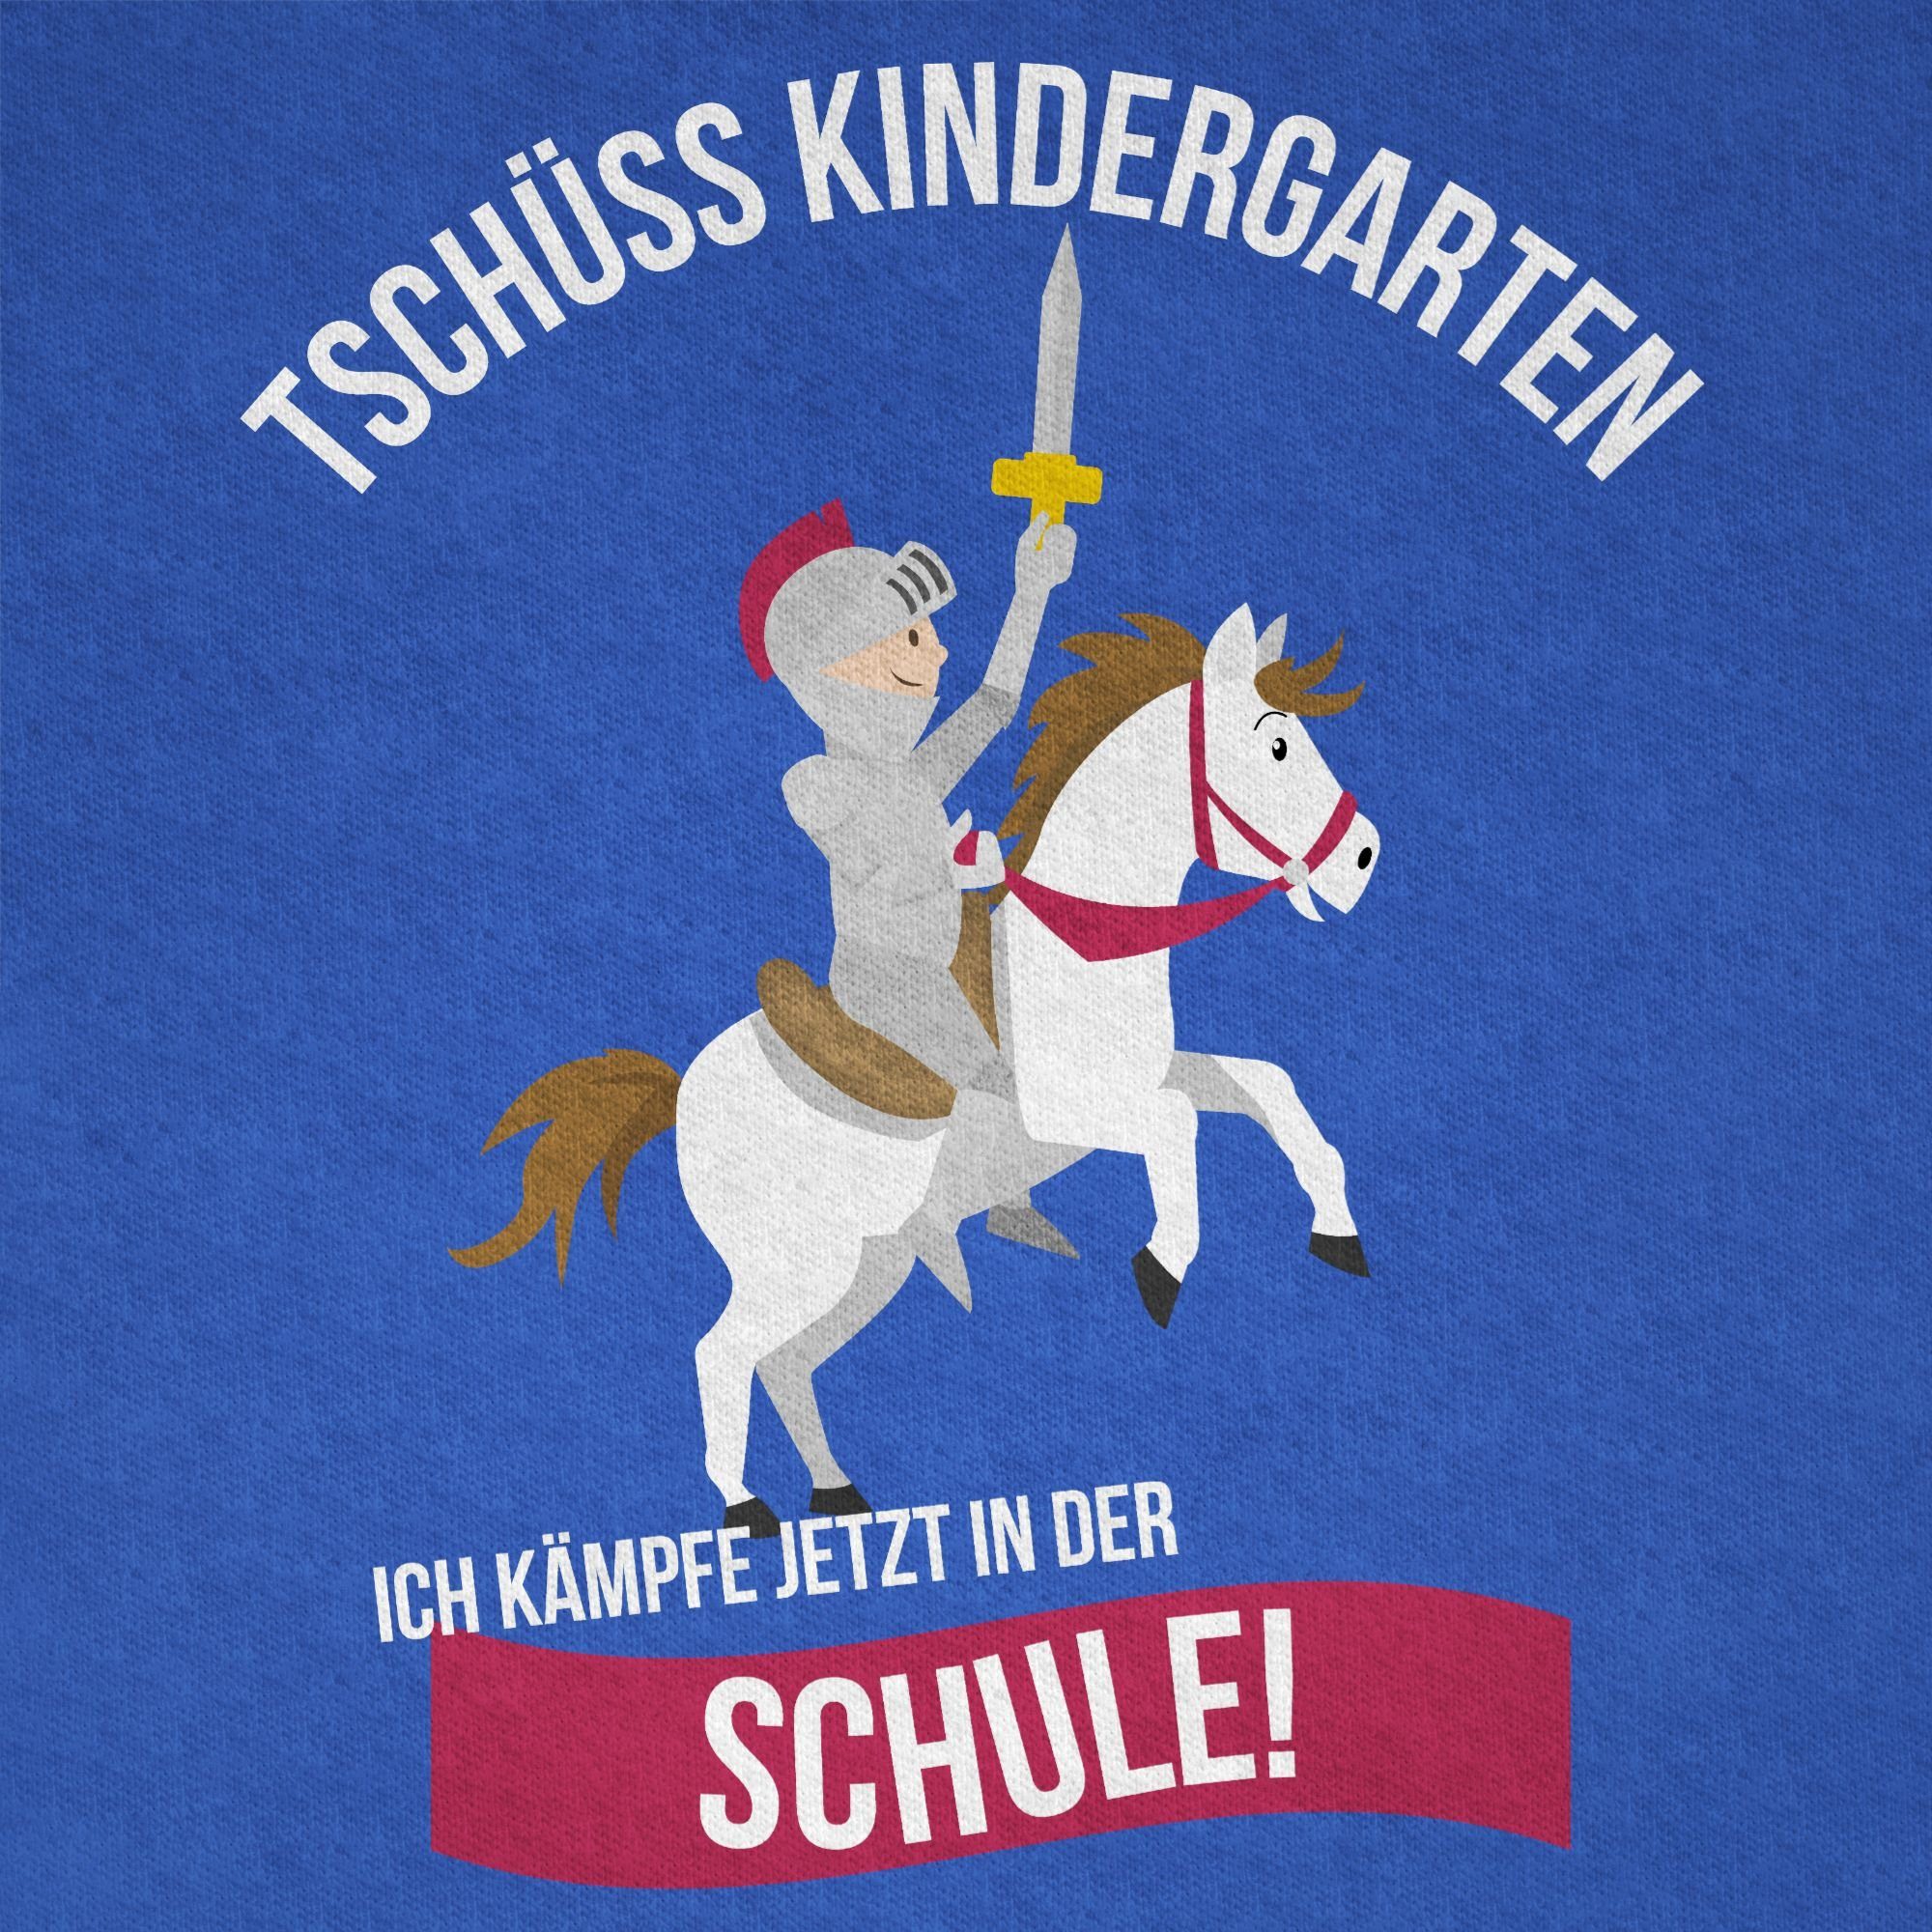 Shirtracer T-Shirt Schulanfang 2 Schule Royalblau Kindergarten Junge Geschenke Ritter Einschulung Tschüss